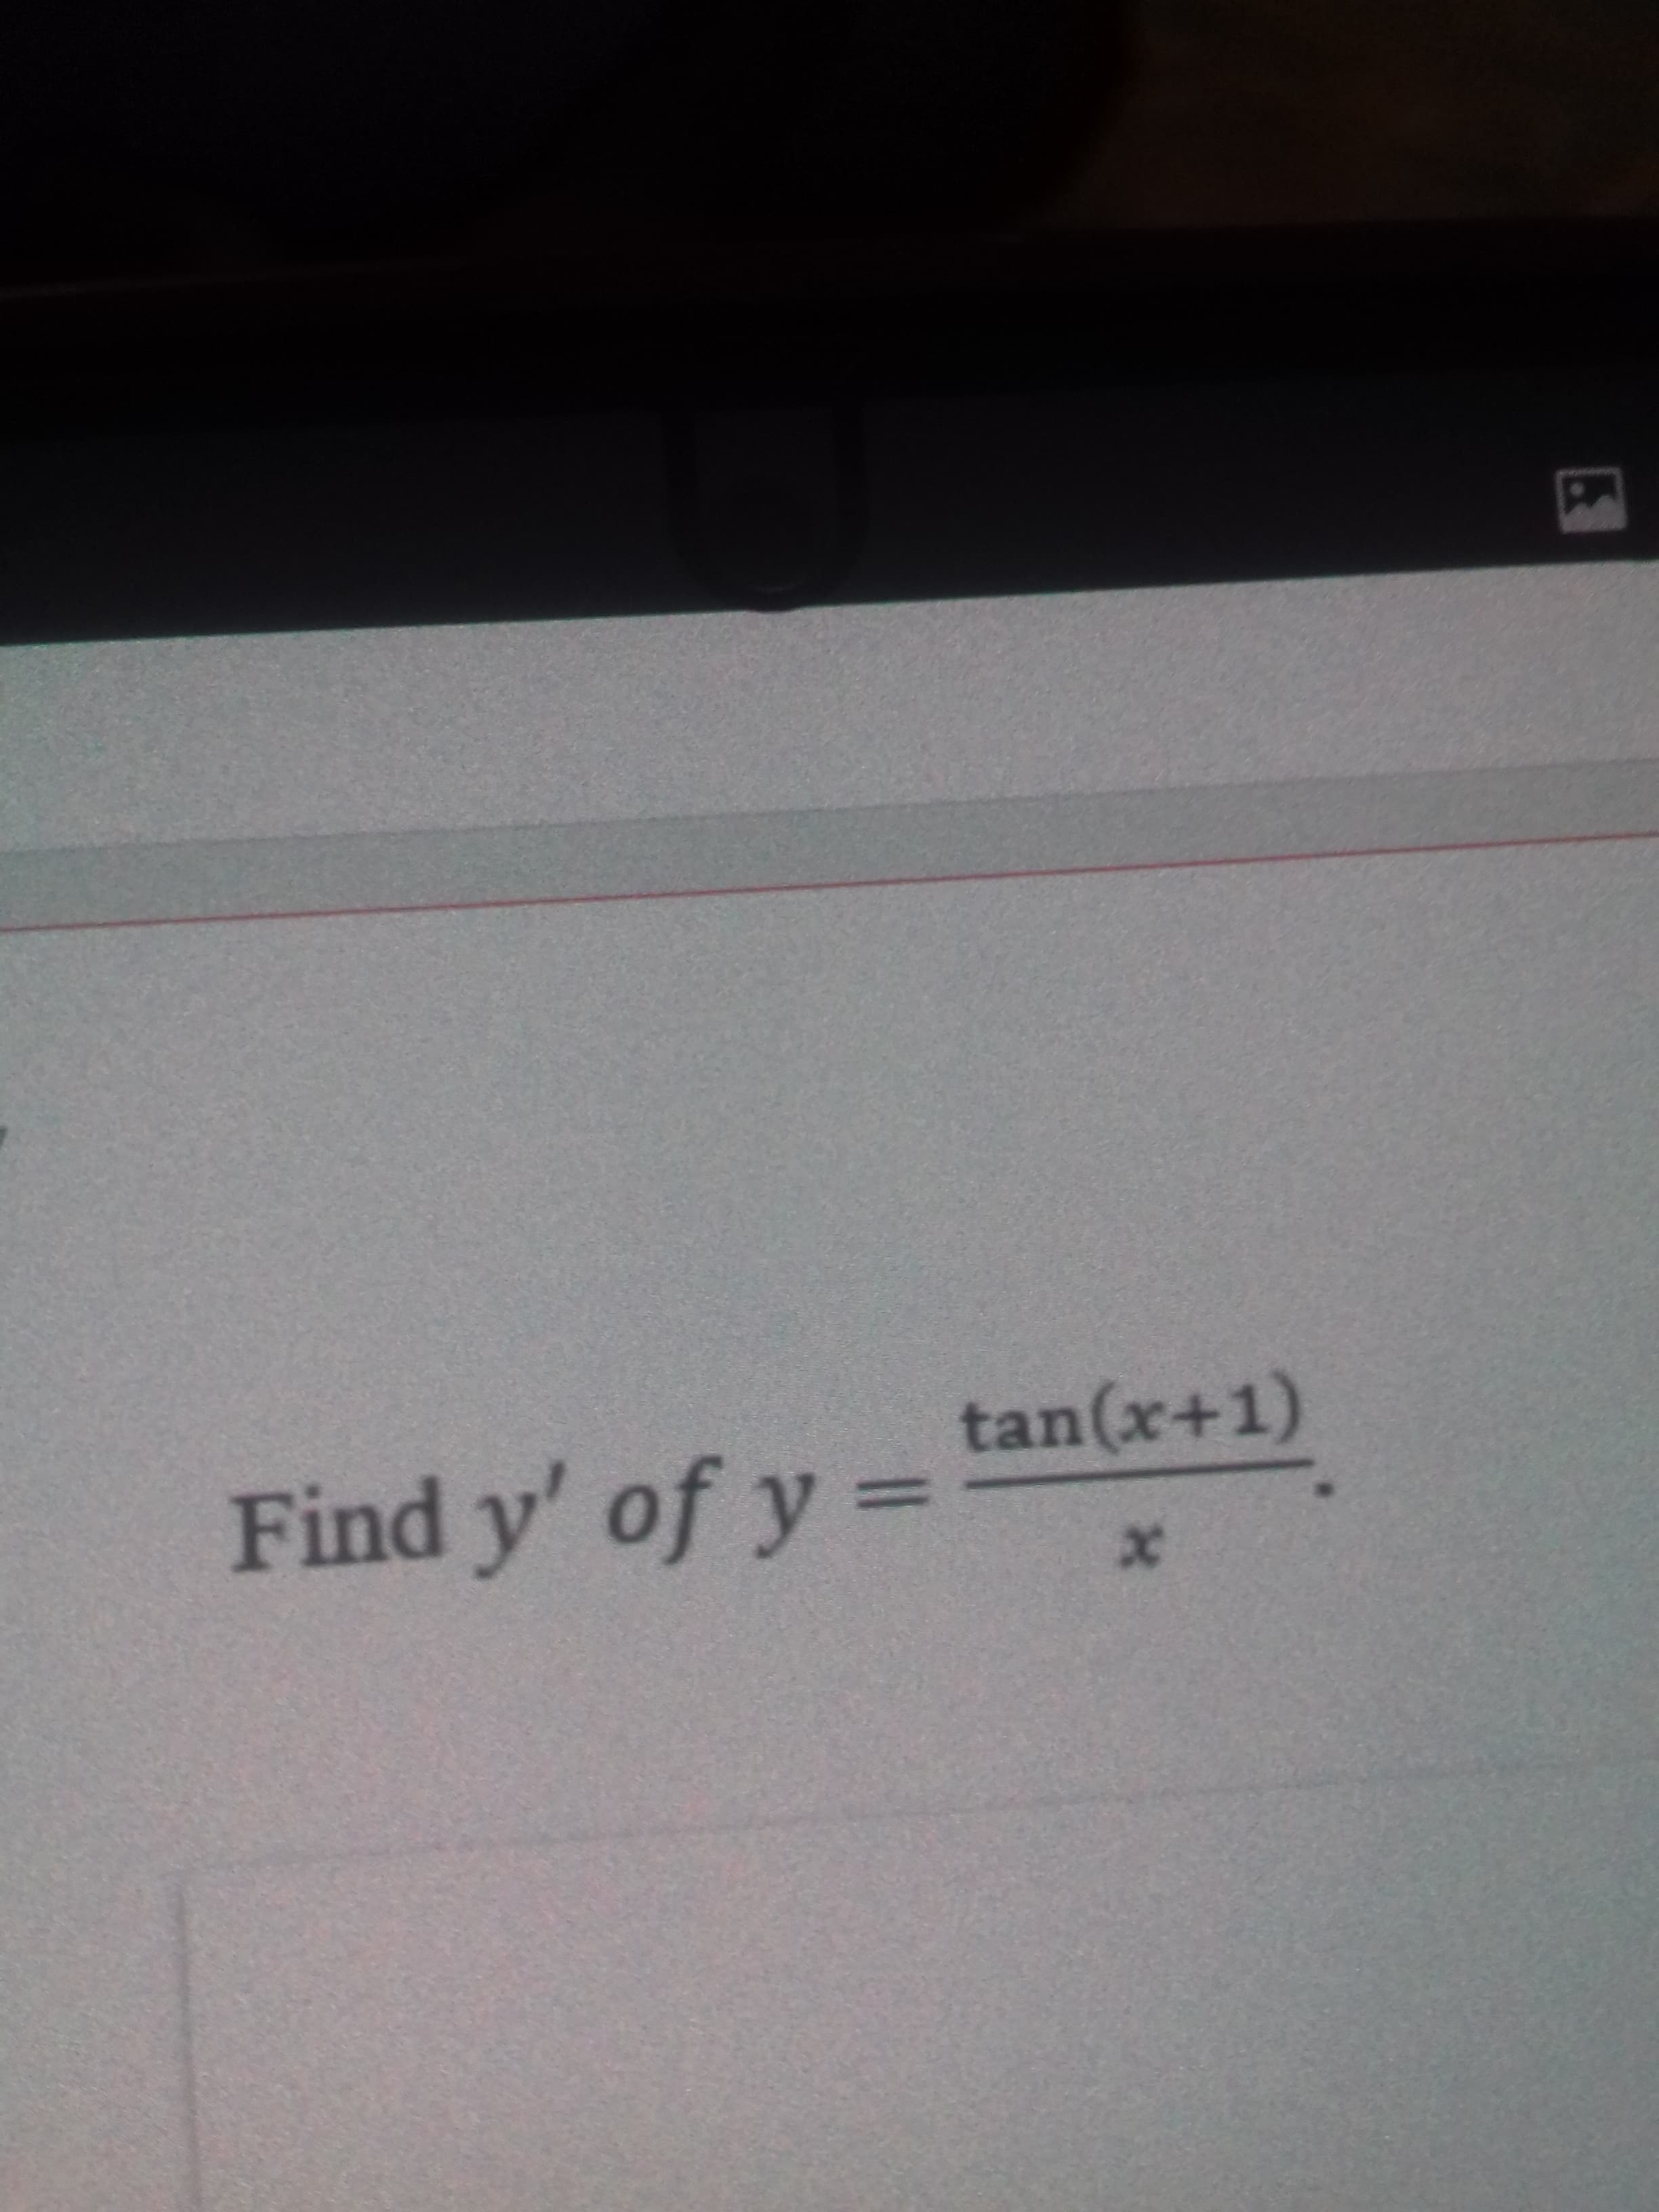 Find y' of y =
tan(x+1)
%3D
